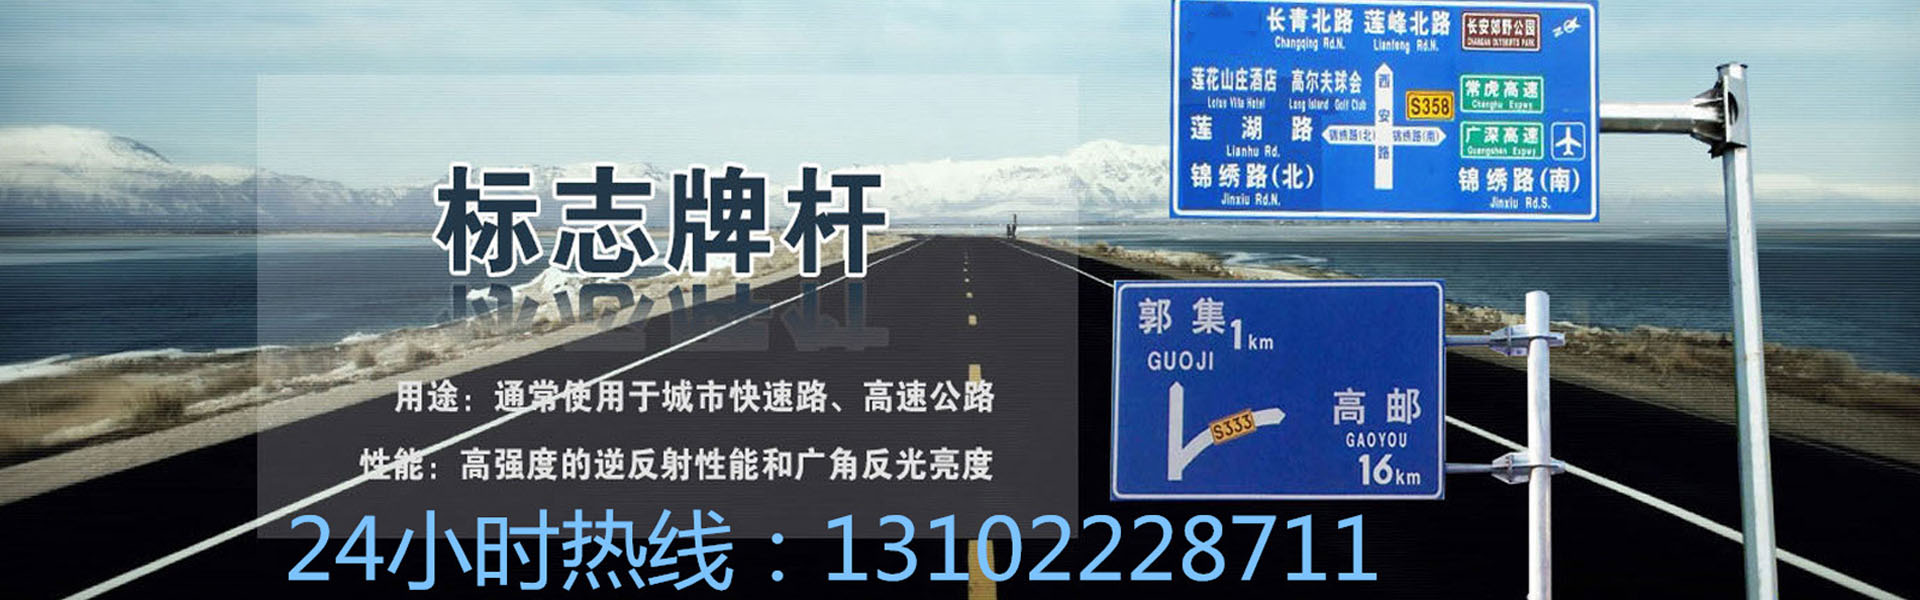 天津海林交通设施有限公司